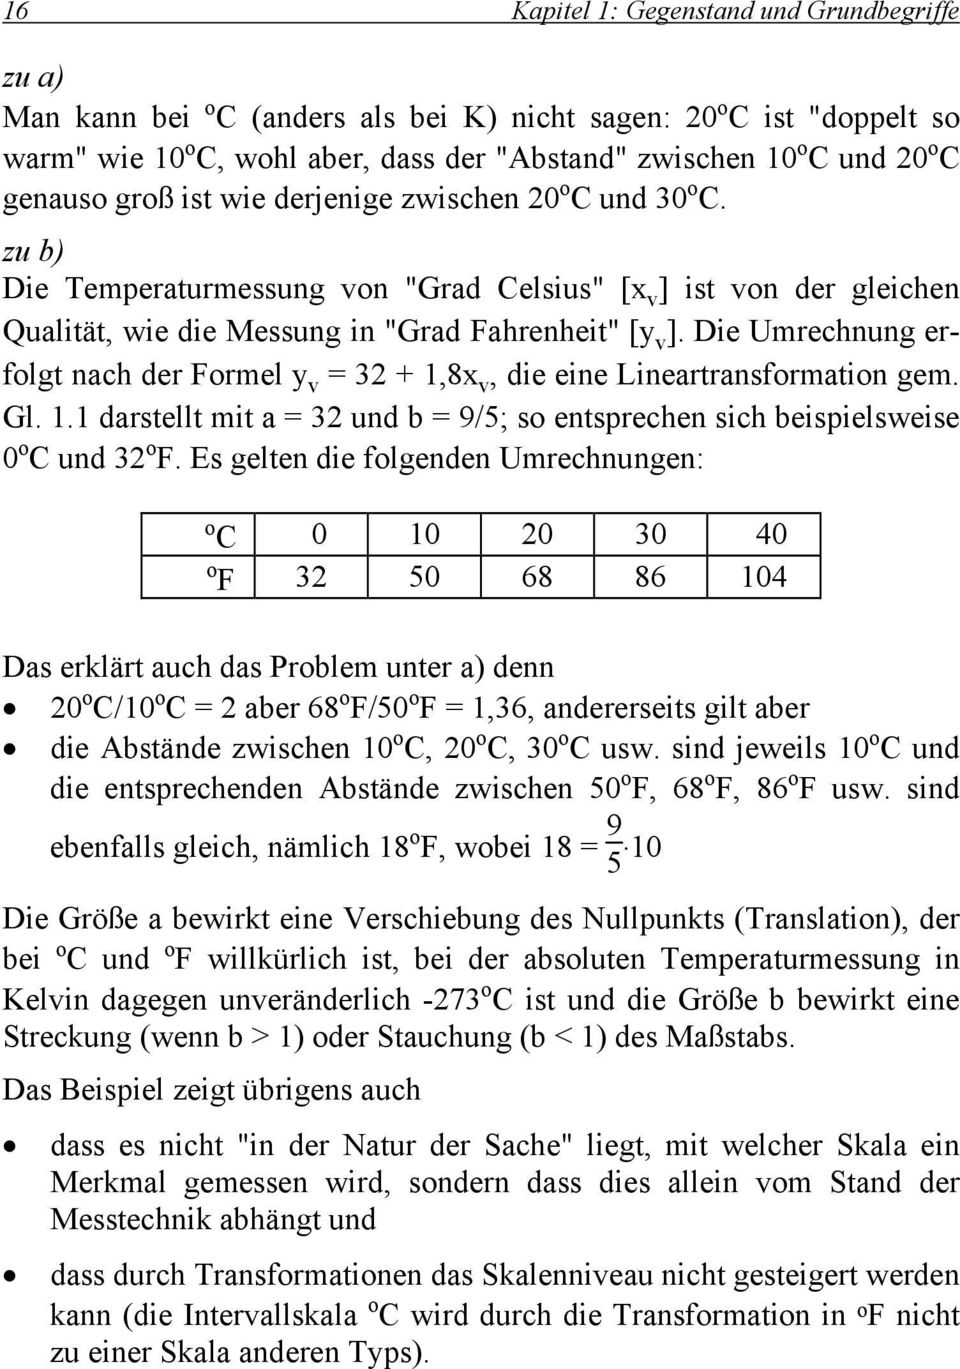 Die Umrechnung erfolgt nach der Formel y v = 32 + 1,8x v, die eine Lineartransformation gem. Gl. 1.1 darstellt mit a = 32 und b = 9/5; so entsprechen sich beispielsweise 0 o C und 32 o F.